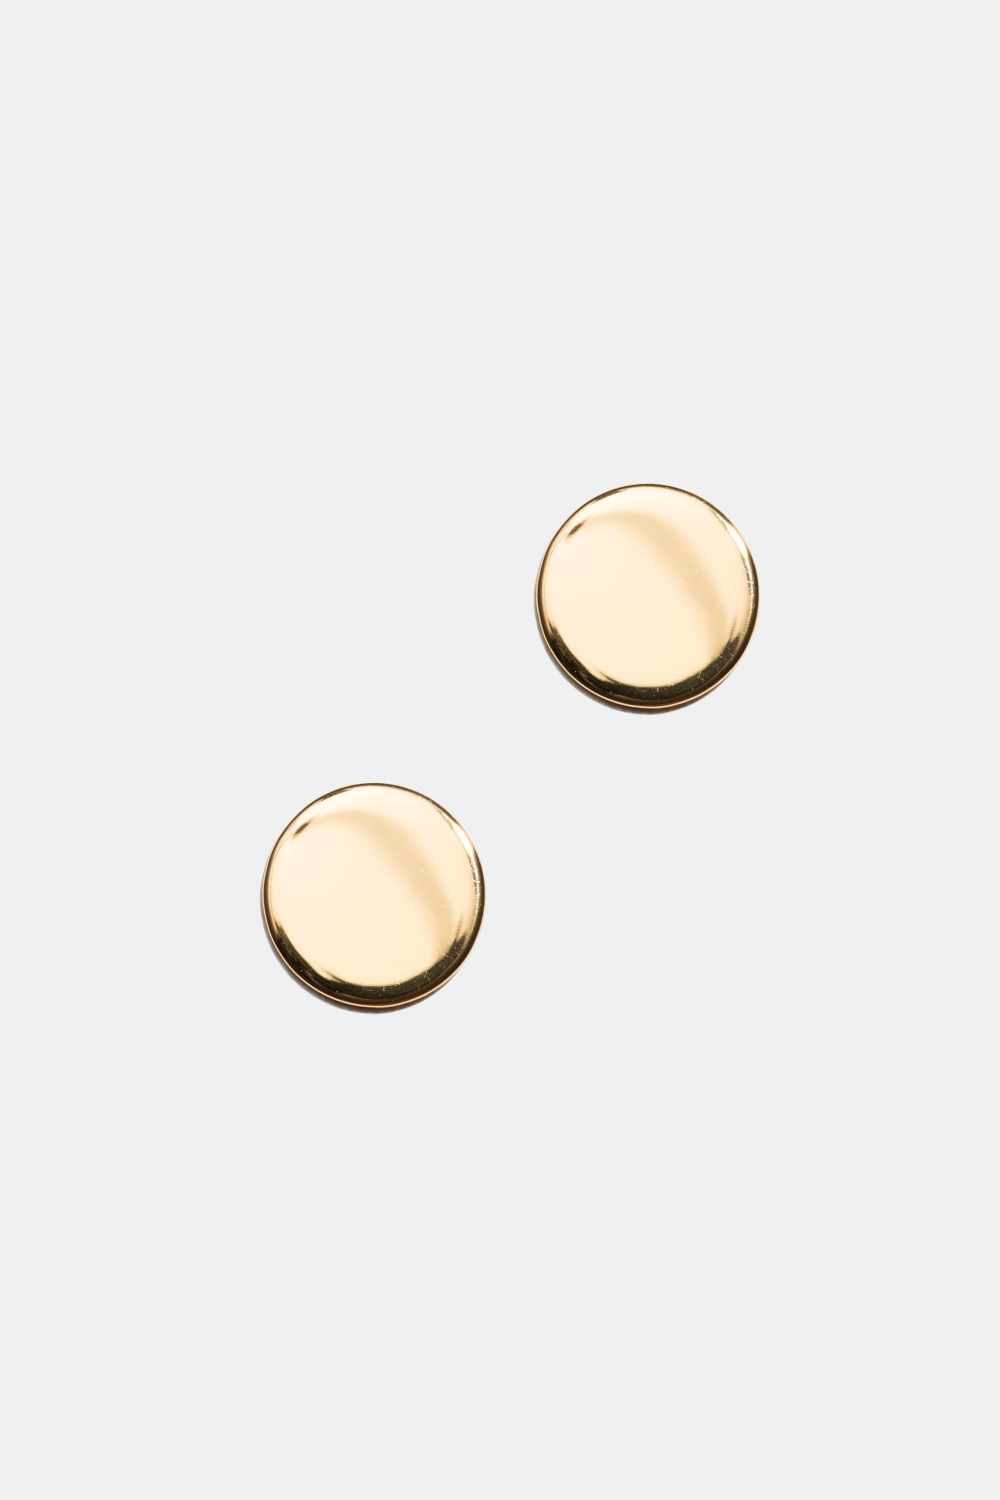 Runde glatte øreringe forgyldt med 18 kt. guld, 0,8 cm i gruppen Smykker / Øreringe hos Glitter (326397661000)